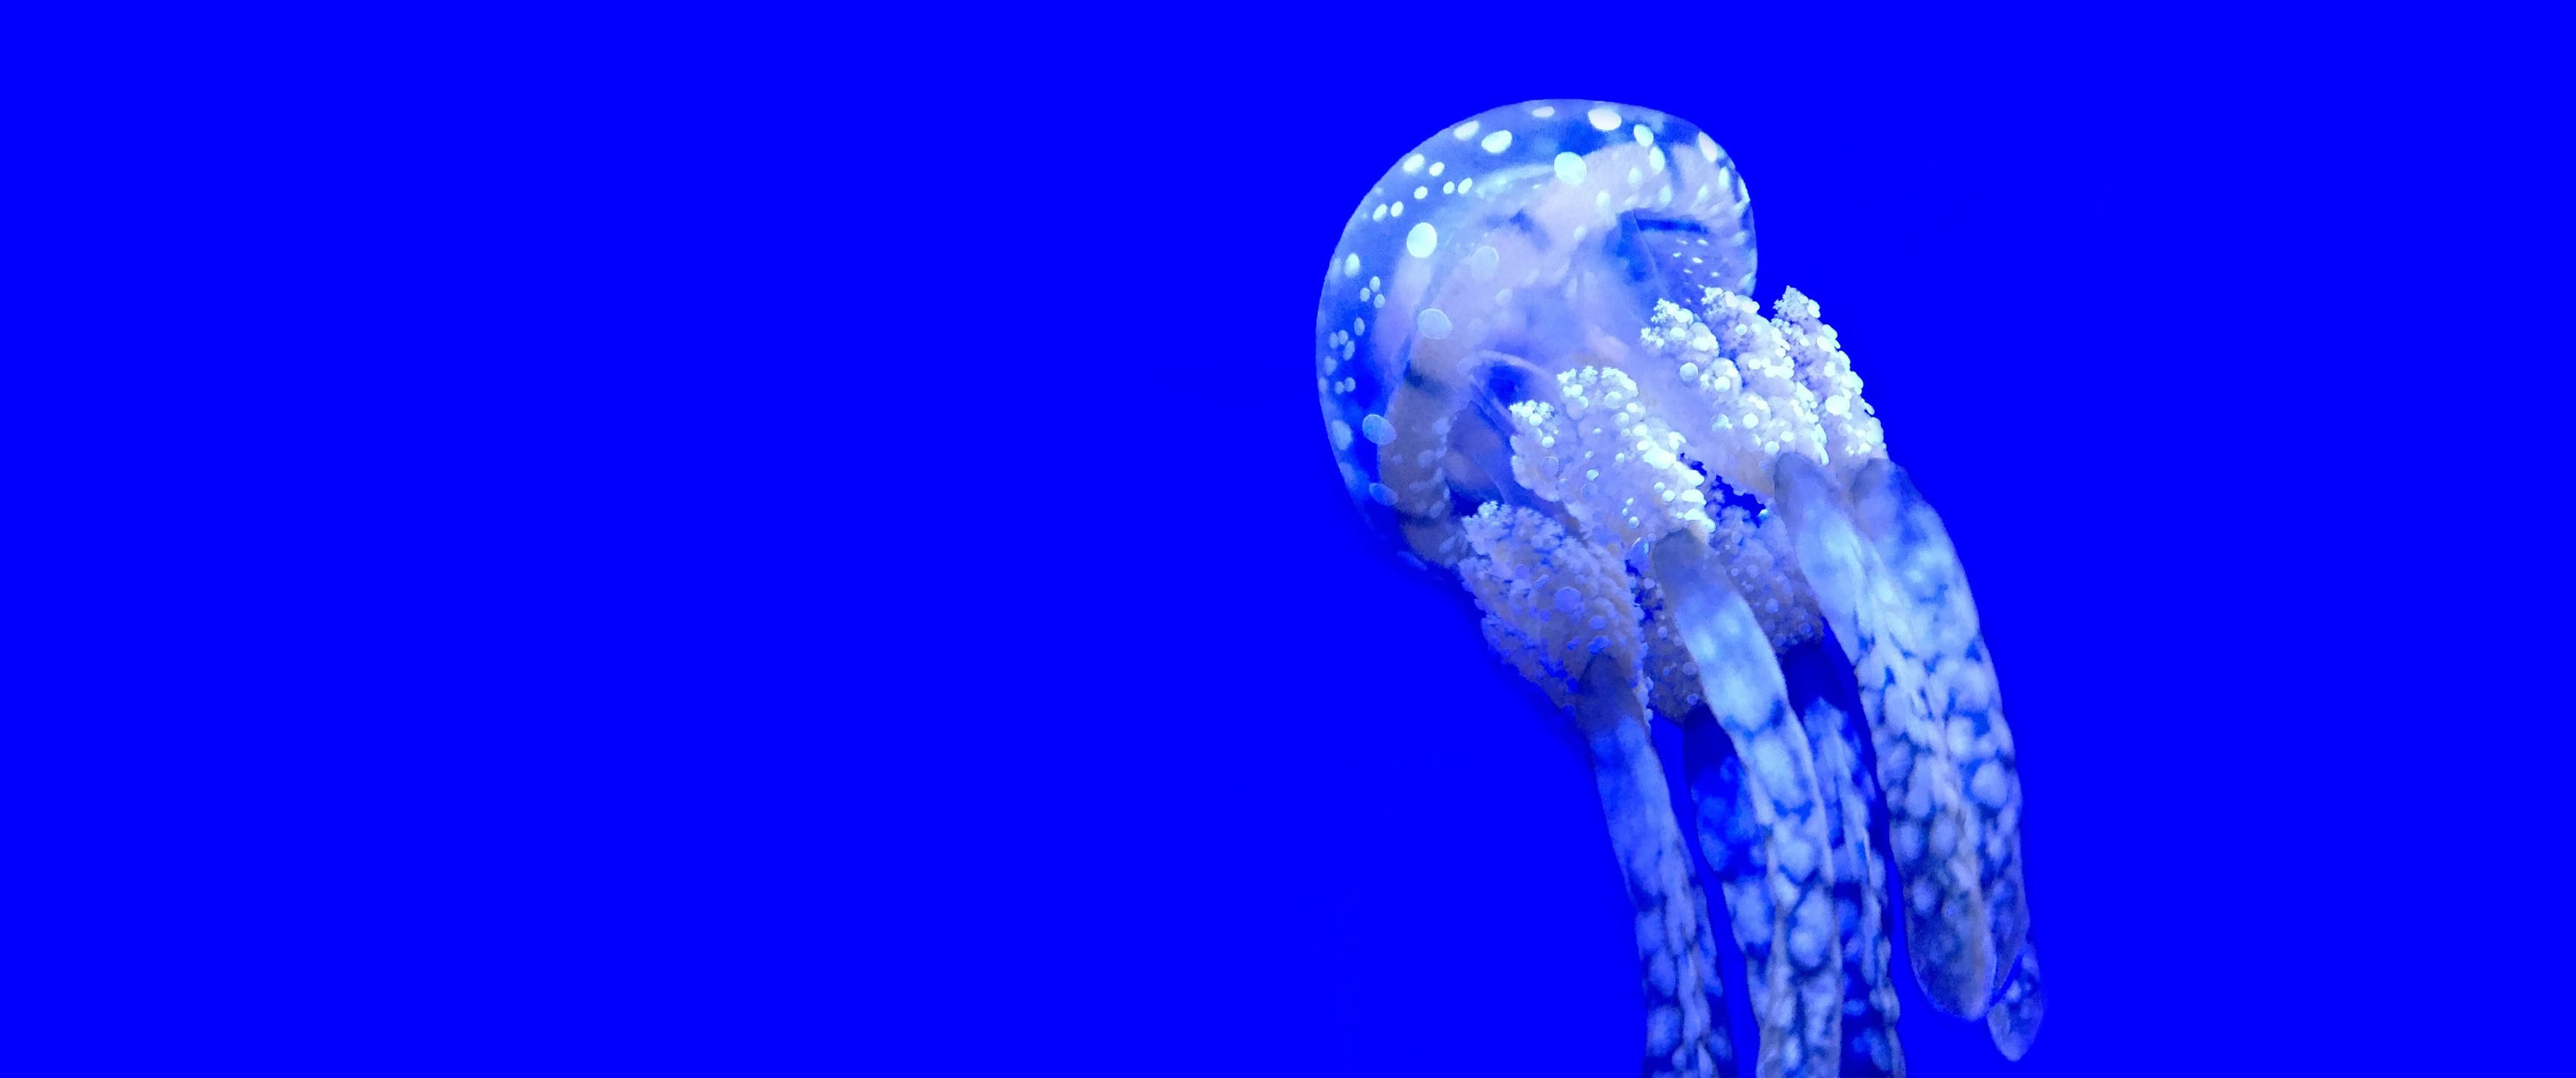 Deep Blue - Jellyfish , HD Wallpaper & Backgrounds